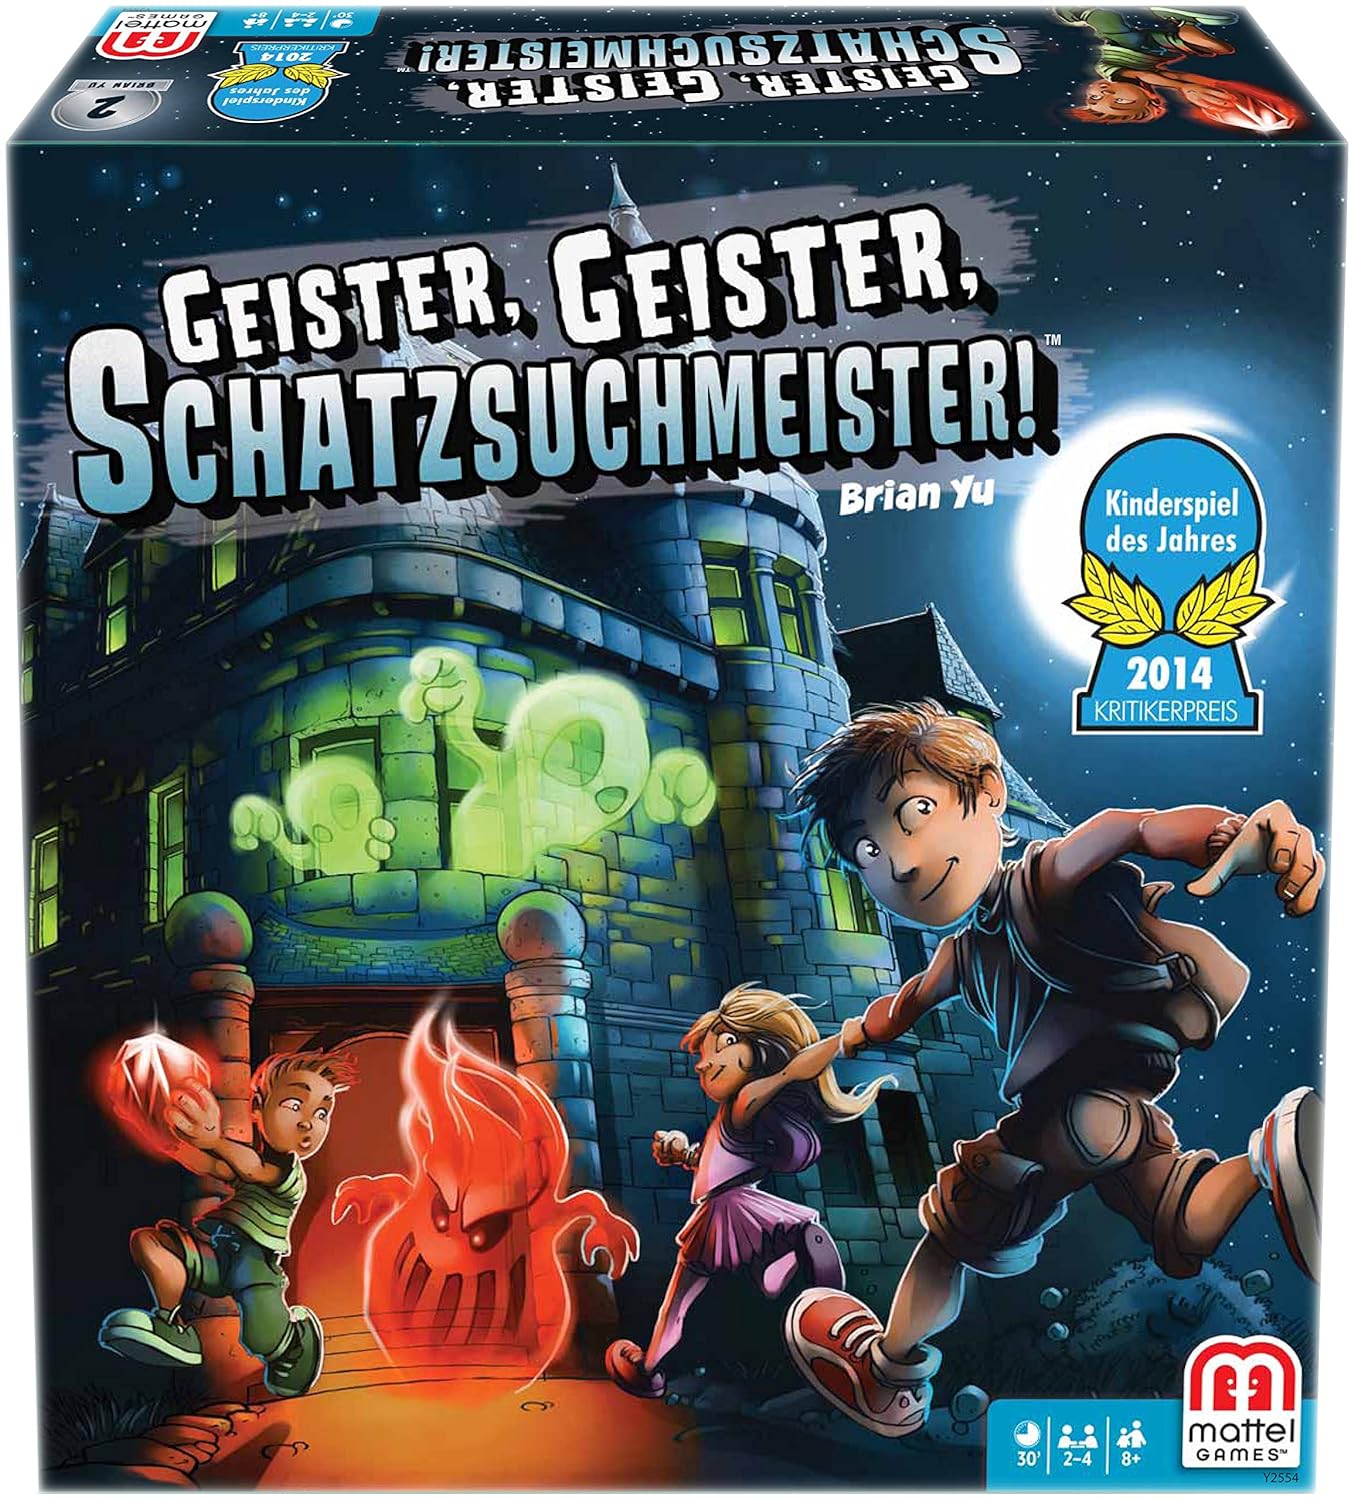 Mattel Y2554 - Geister Geister Schatzsuchmeister,